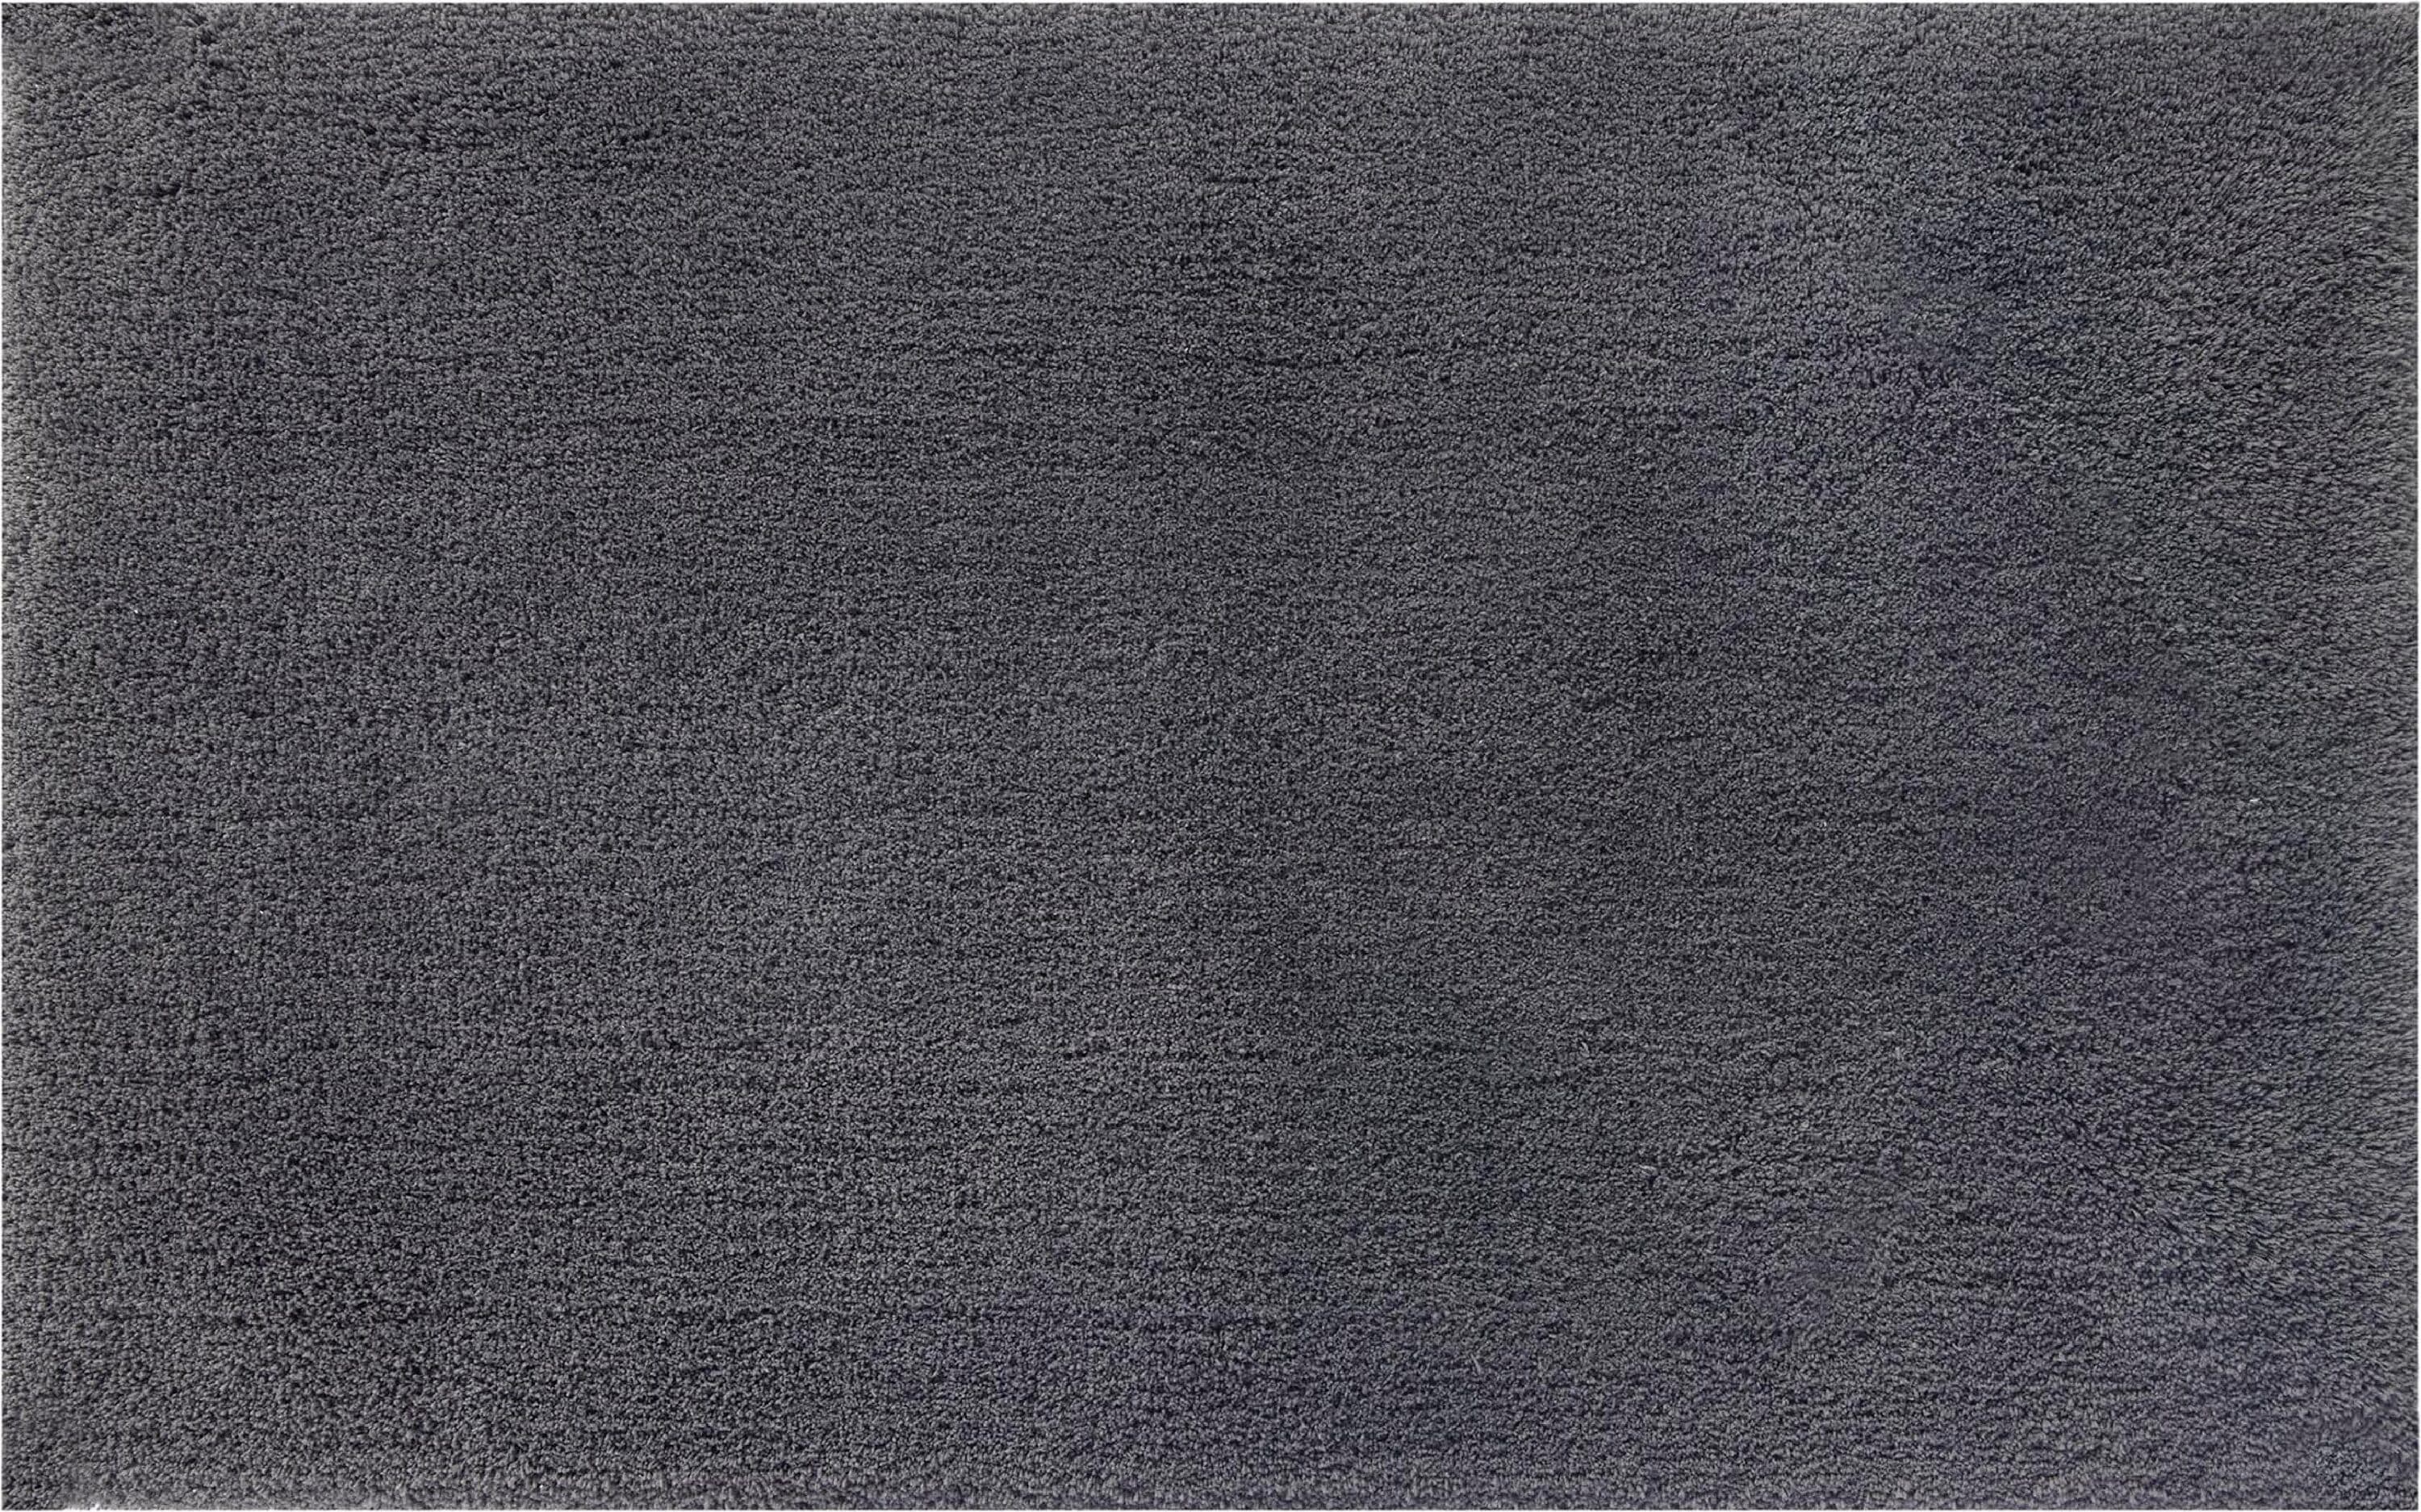 1pc Dark Grey Base Light Grey Letter Printed Bath Bathroom Rug